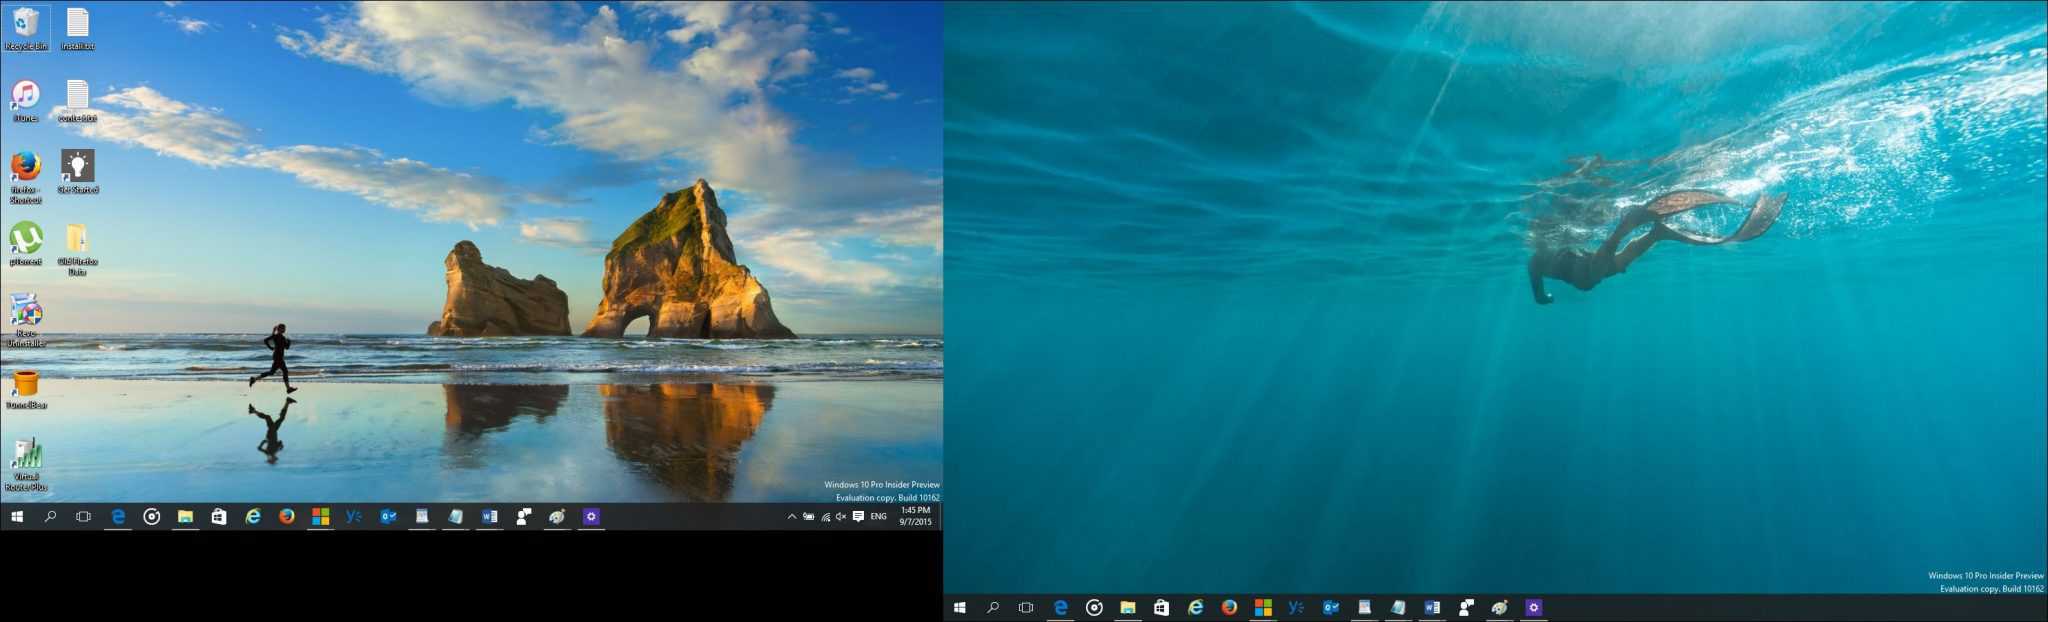 Фото с экрана монитора на Windows 10 (большое количество фото ...